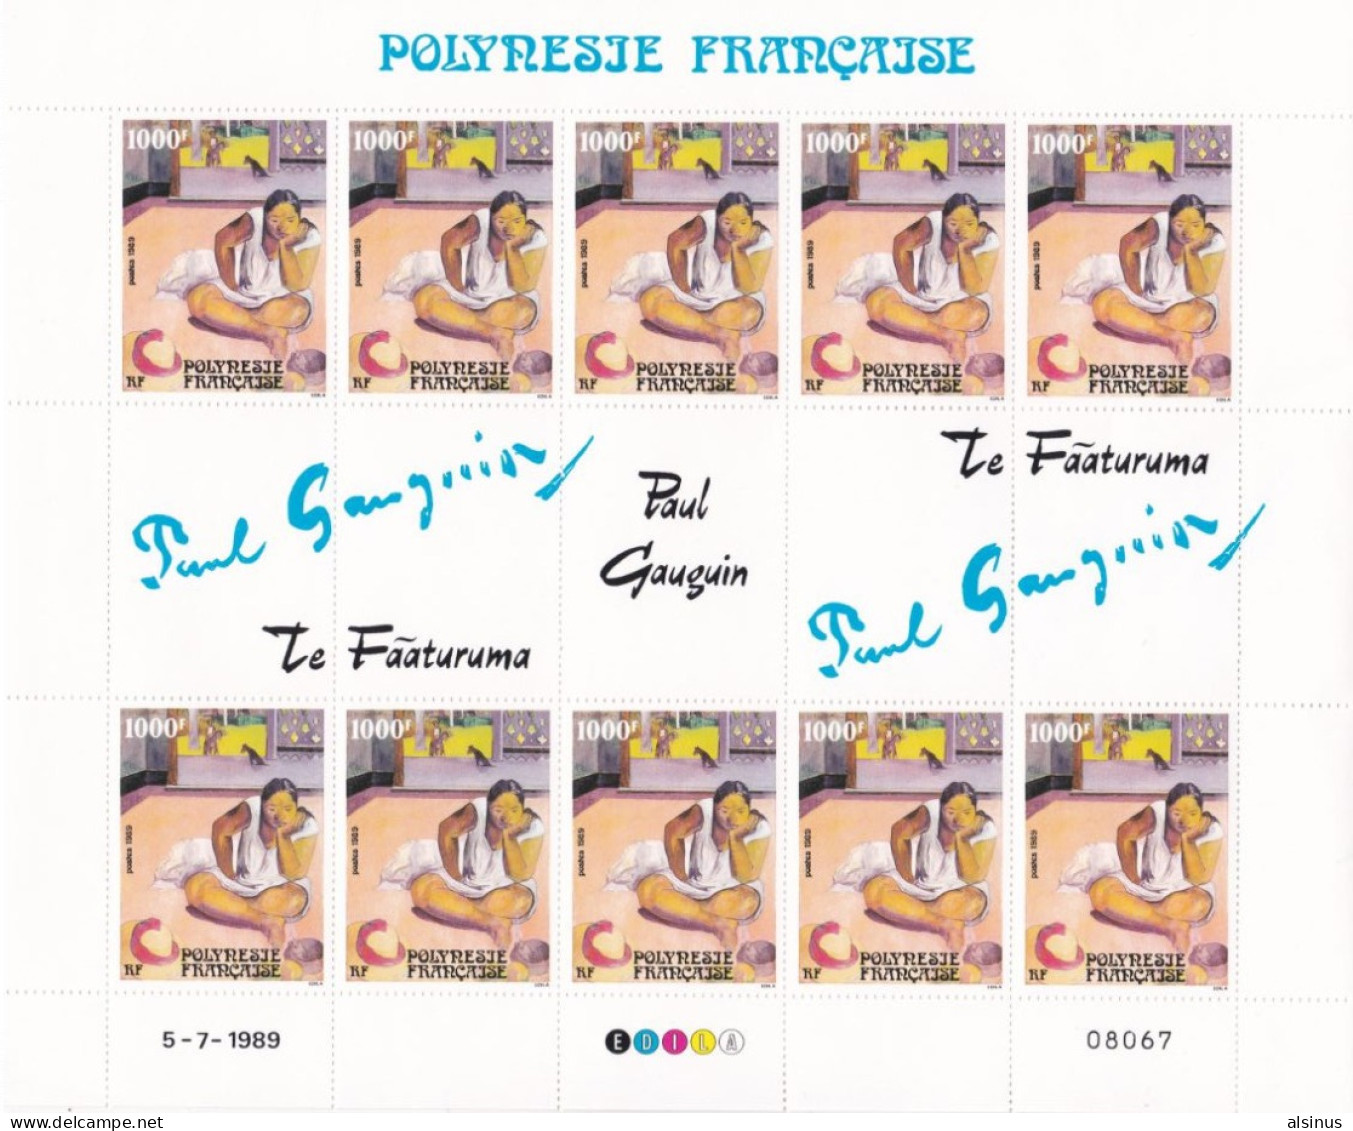 POLYNESIE FRANCAISE - 1989 - N° 346 MULTICOLORE - 1000 F -  PAUL GAUGUIN - PLANCHE COMPLETE DE 10 TIMBRES - ETAT NEUF - Ungebraucht